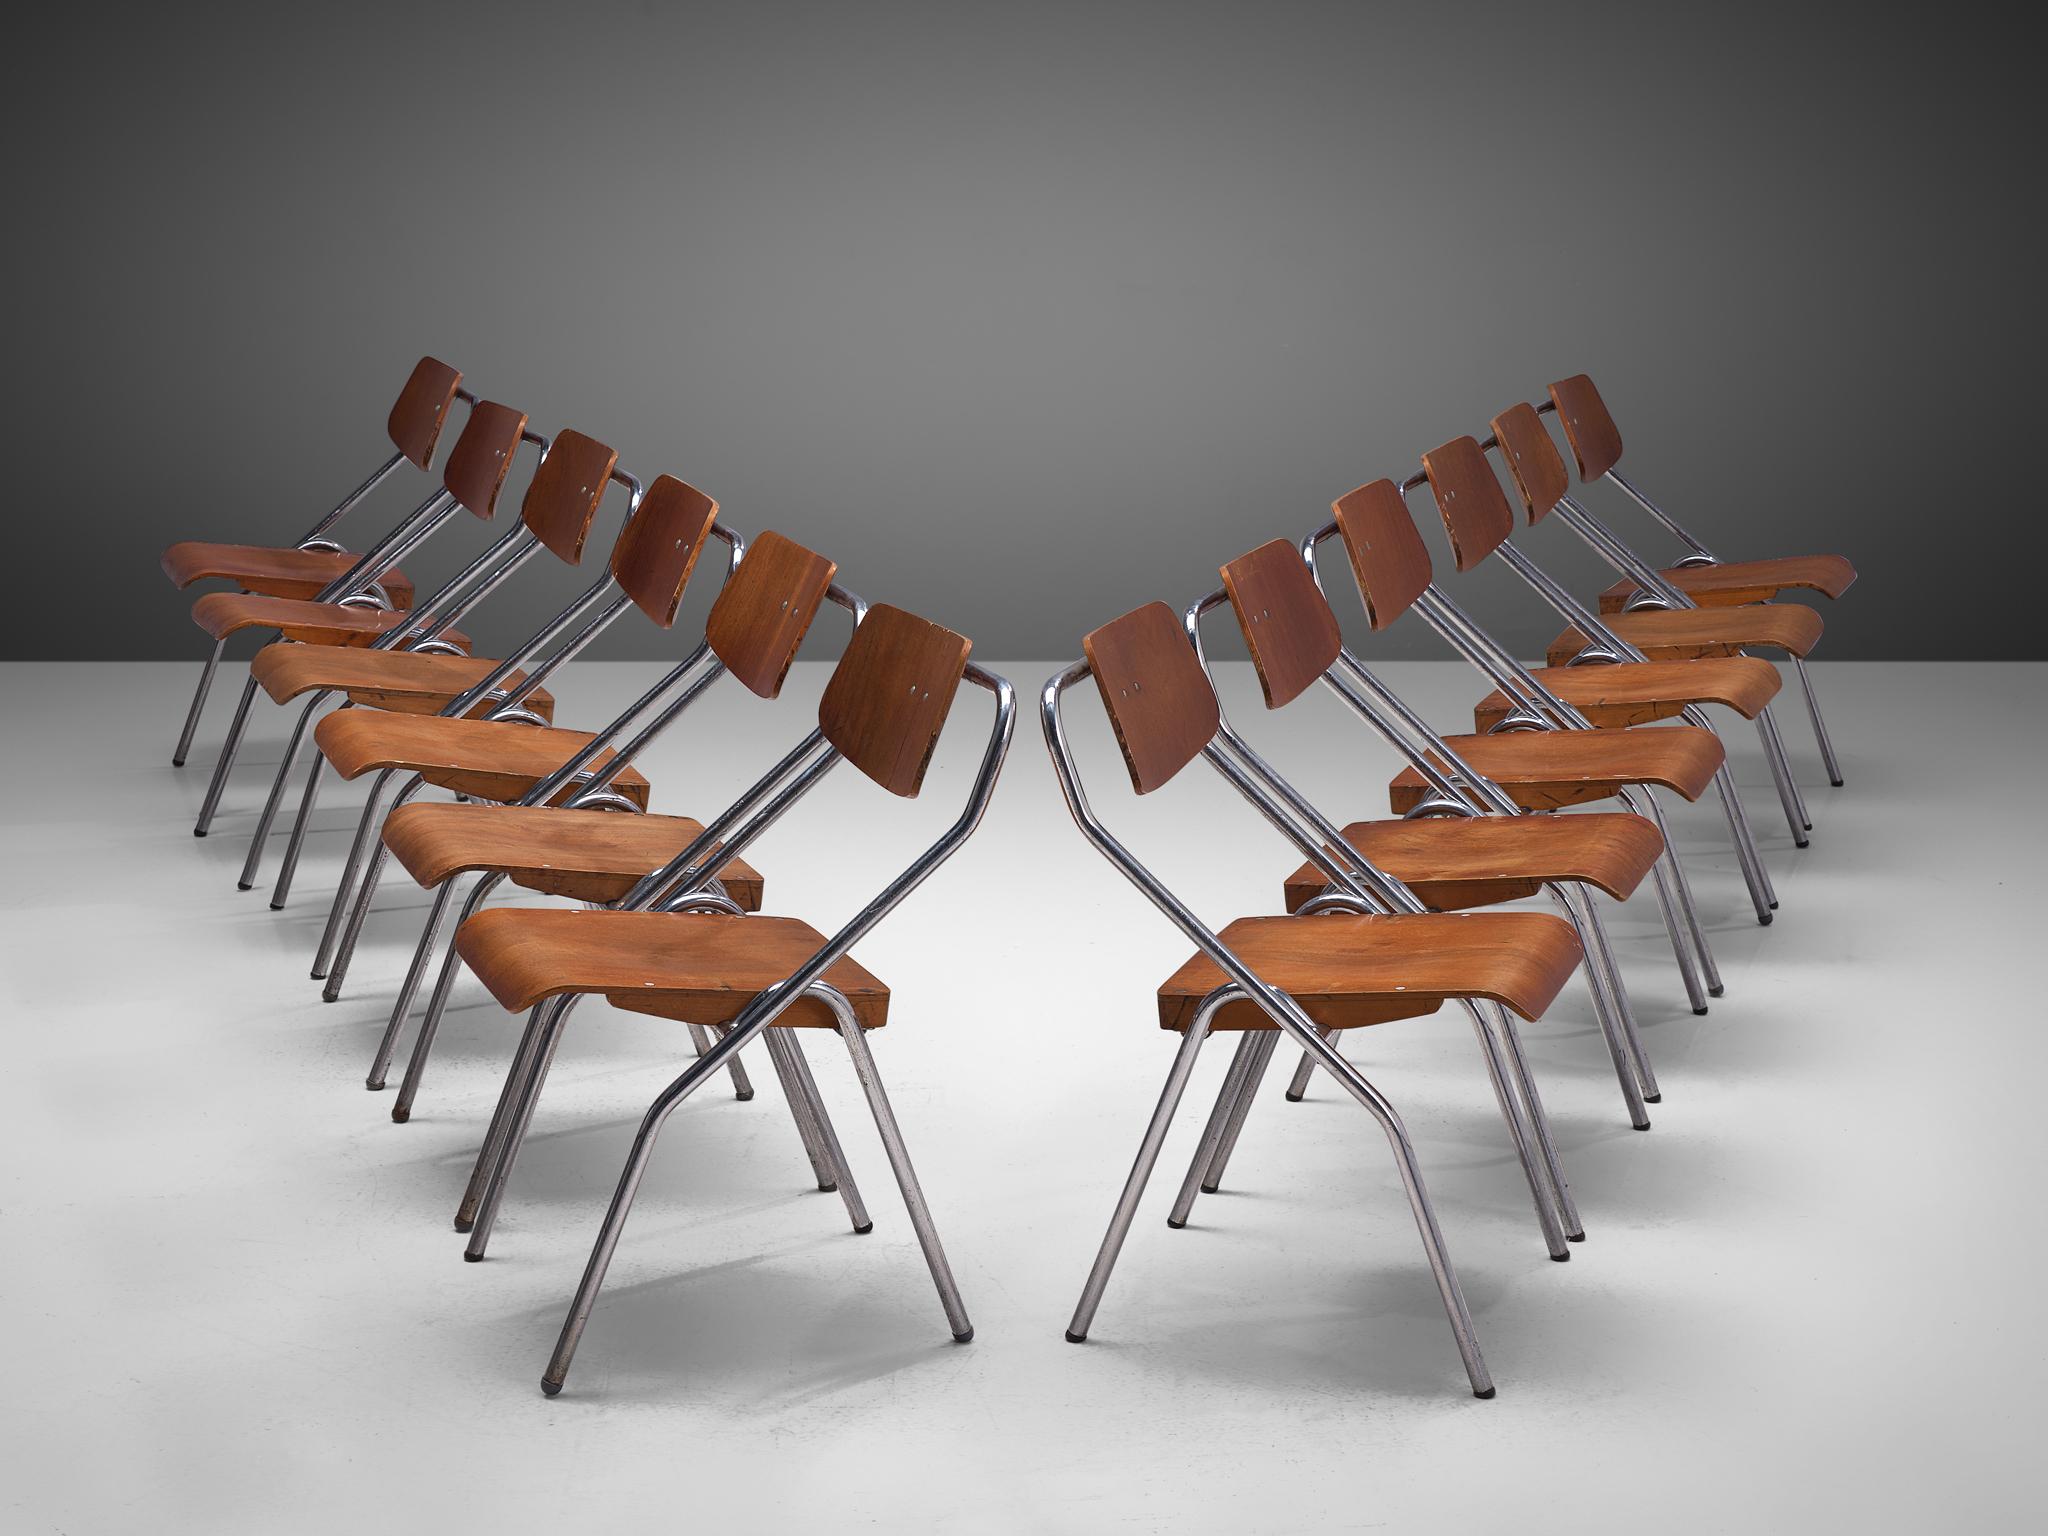 Chaises pliantes, métal chromé, contreplaqué, Pays-Bas, circa. 1930

Ce très grand ensemble de chaises d'école hollandaise du milieu du siècle serait un excellent choix pour votre projet si vous recherchez des chaises faciles à ranger. Les sièges